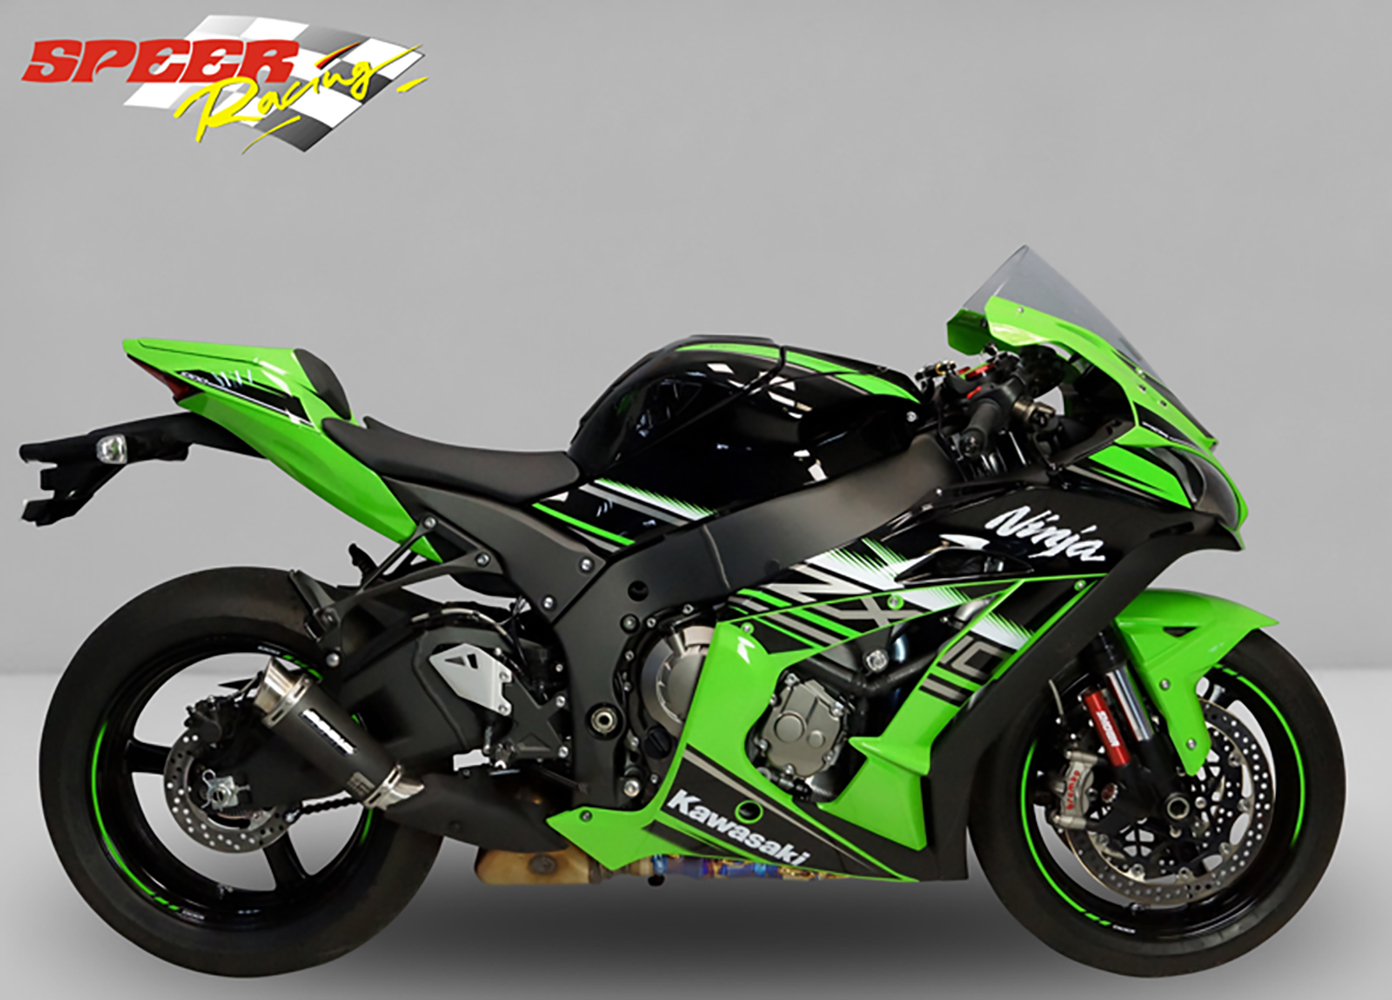 Support de cintre d'échappement de moto pour Kawasaki Ninja Zx10r